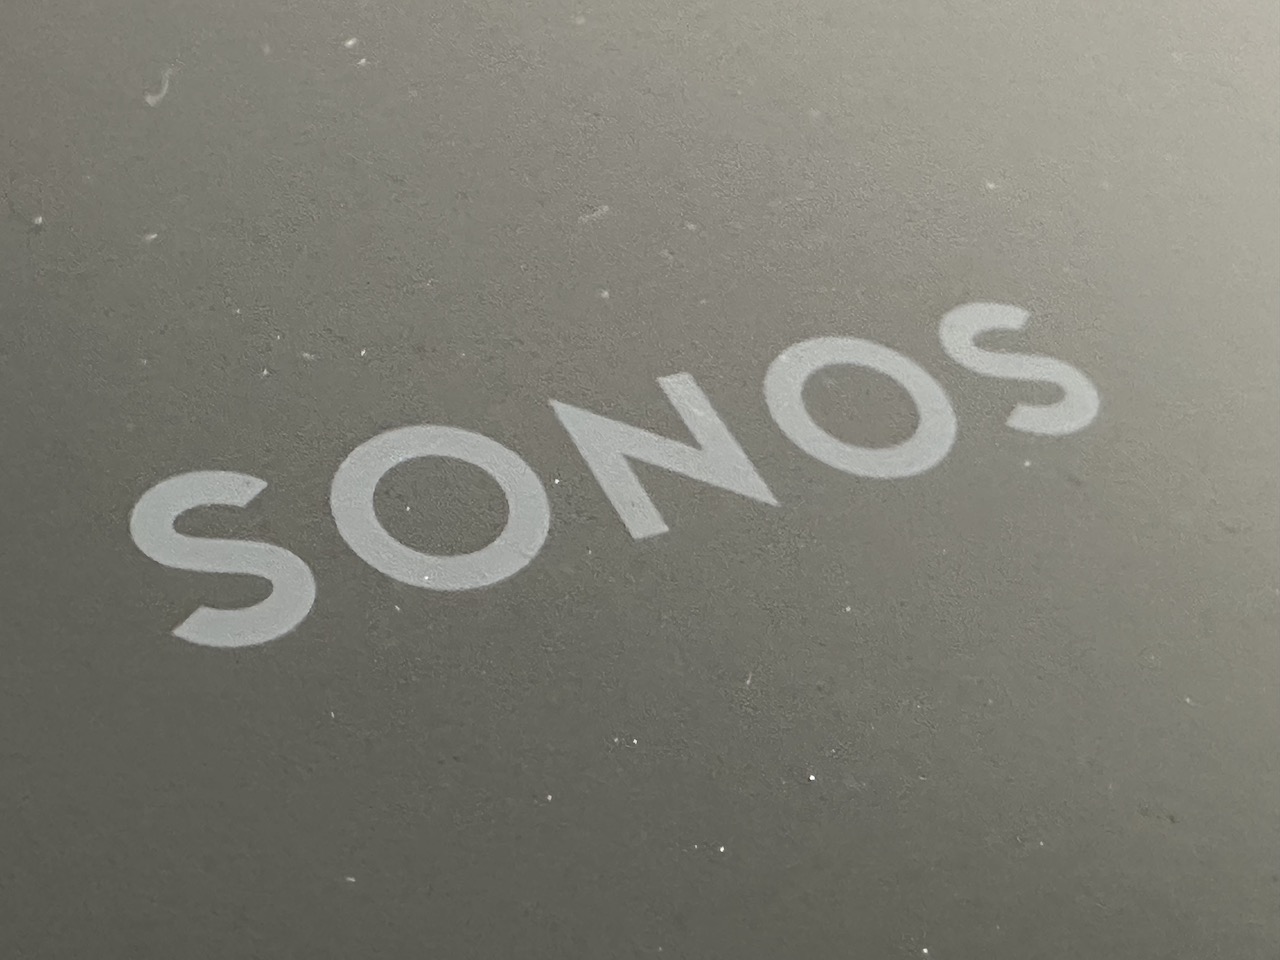 Sonos arbeitet an neuen Era 100 und Era 300 Lautsprechern › Macerkopf